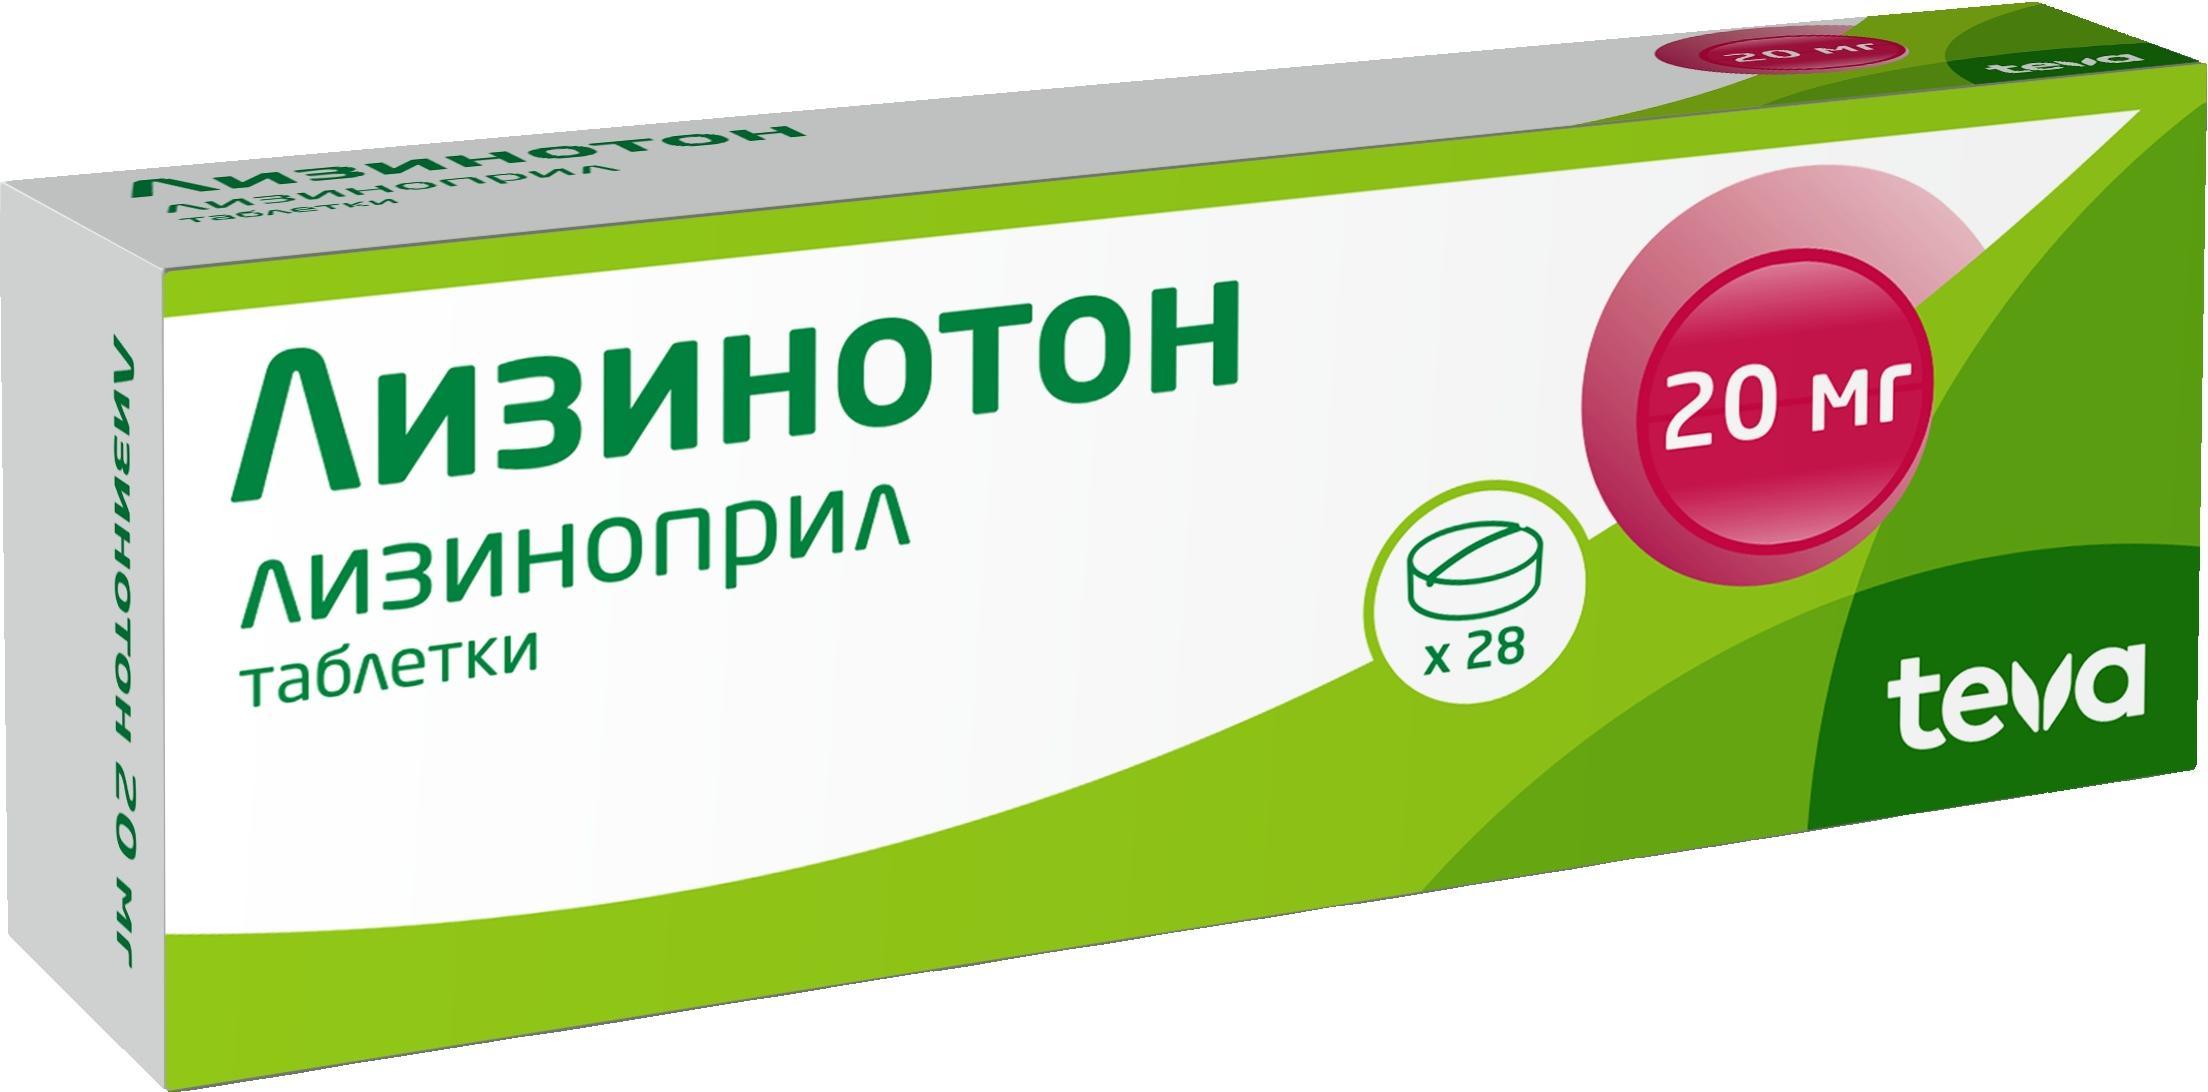 Купить Лизинотон таблетки 20 мг 28 шт., Teva